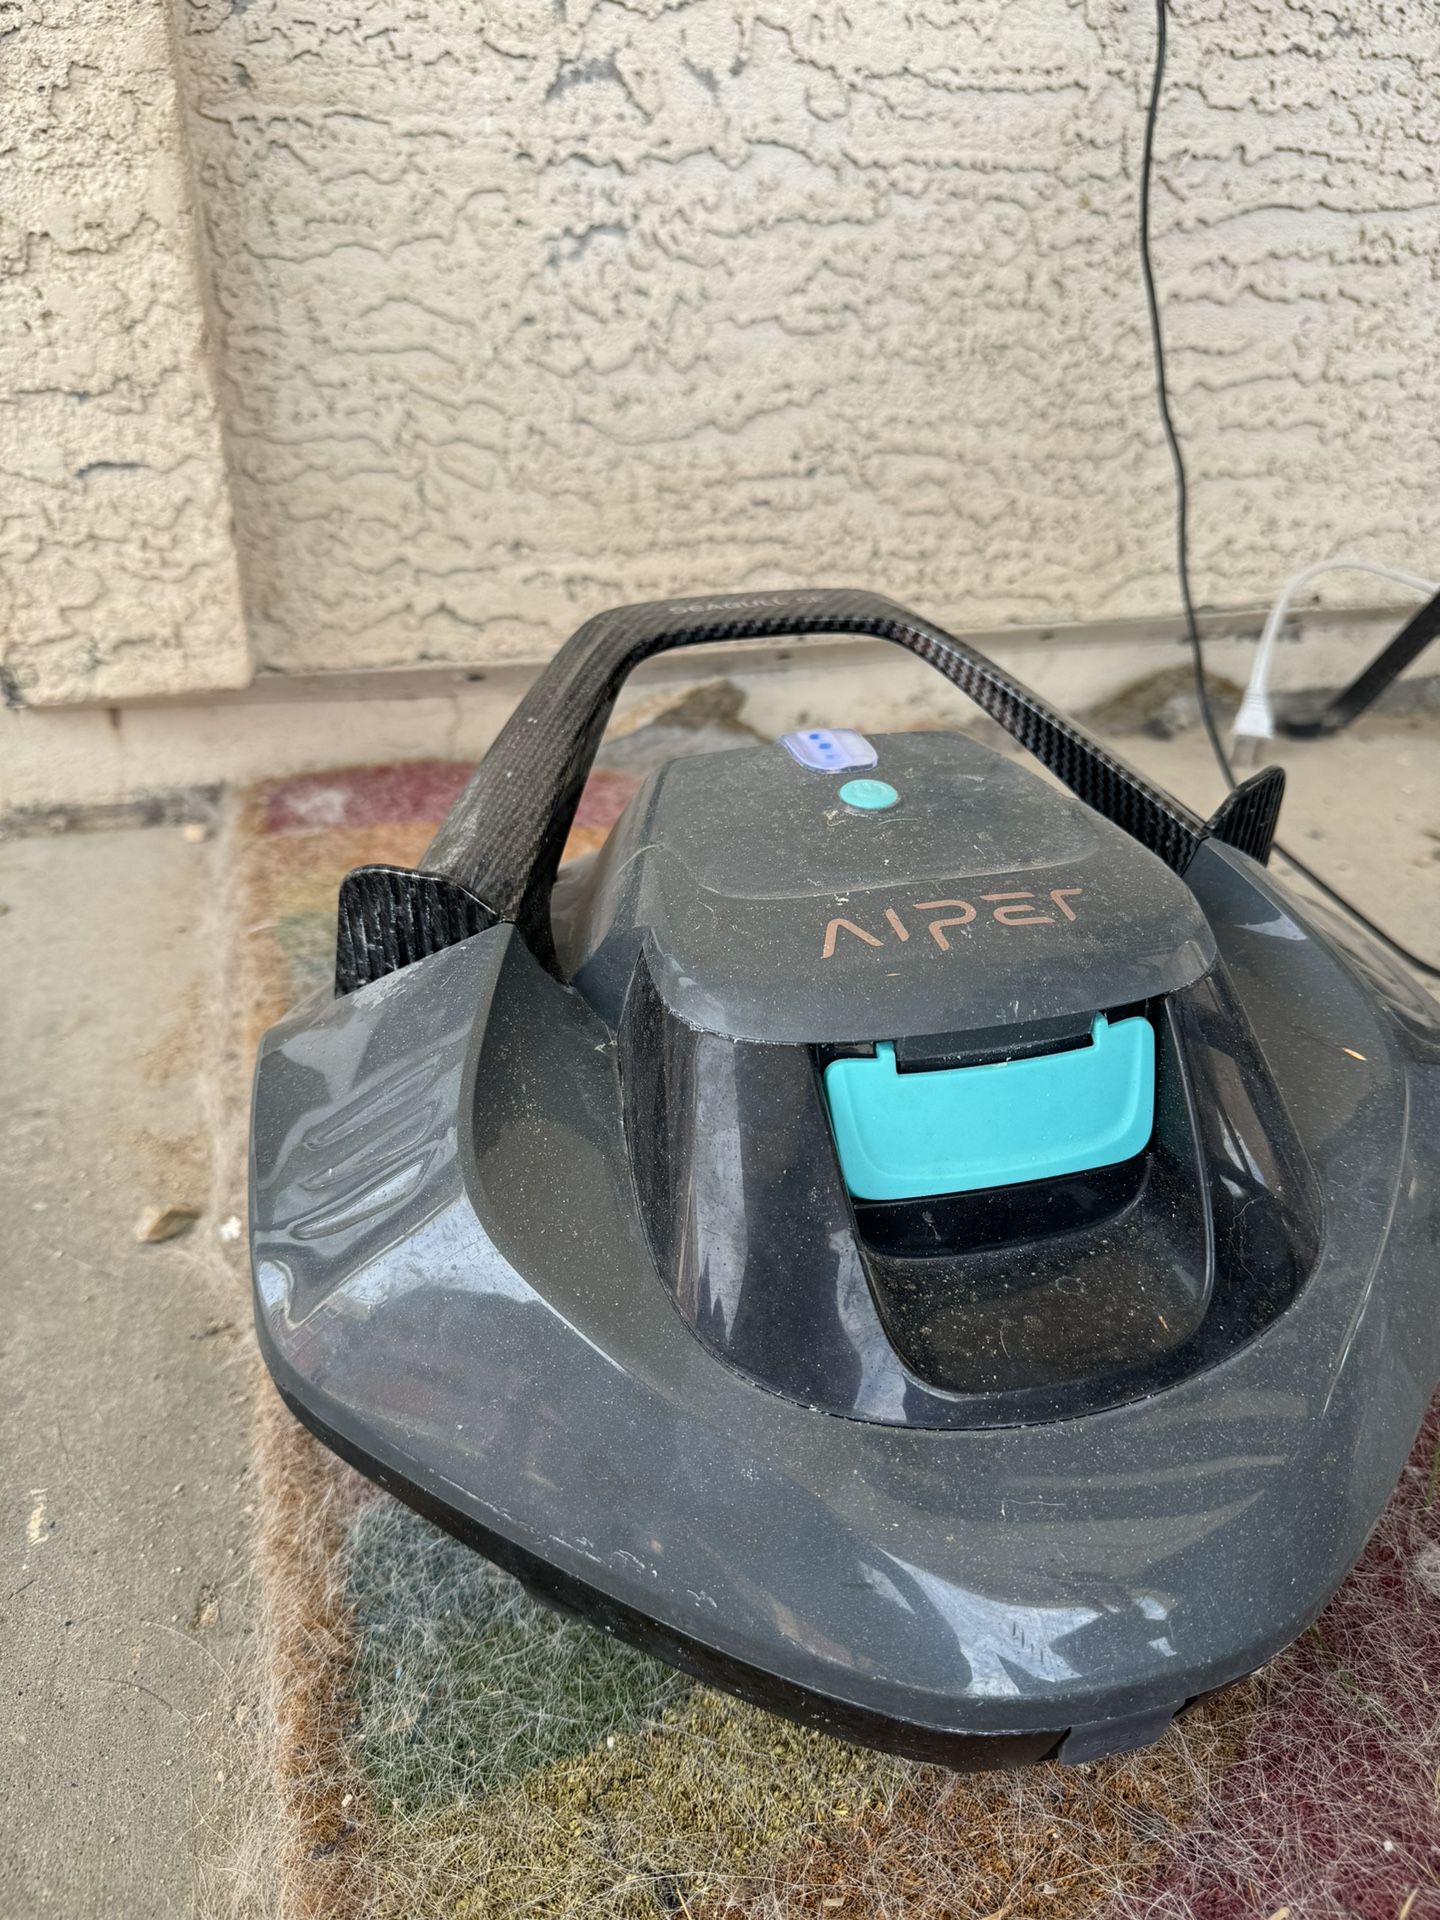 Aiper Pool Vacuum 